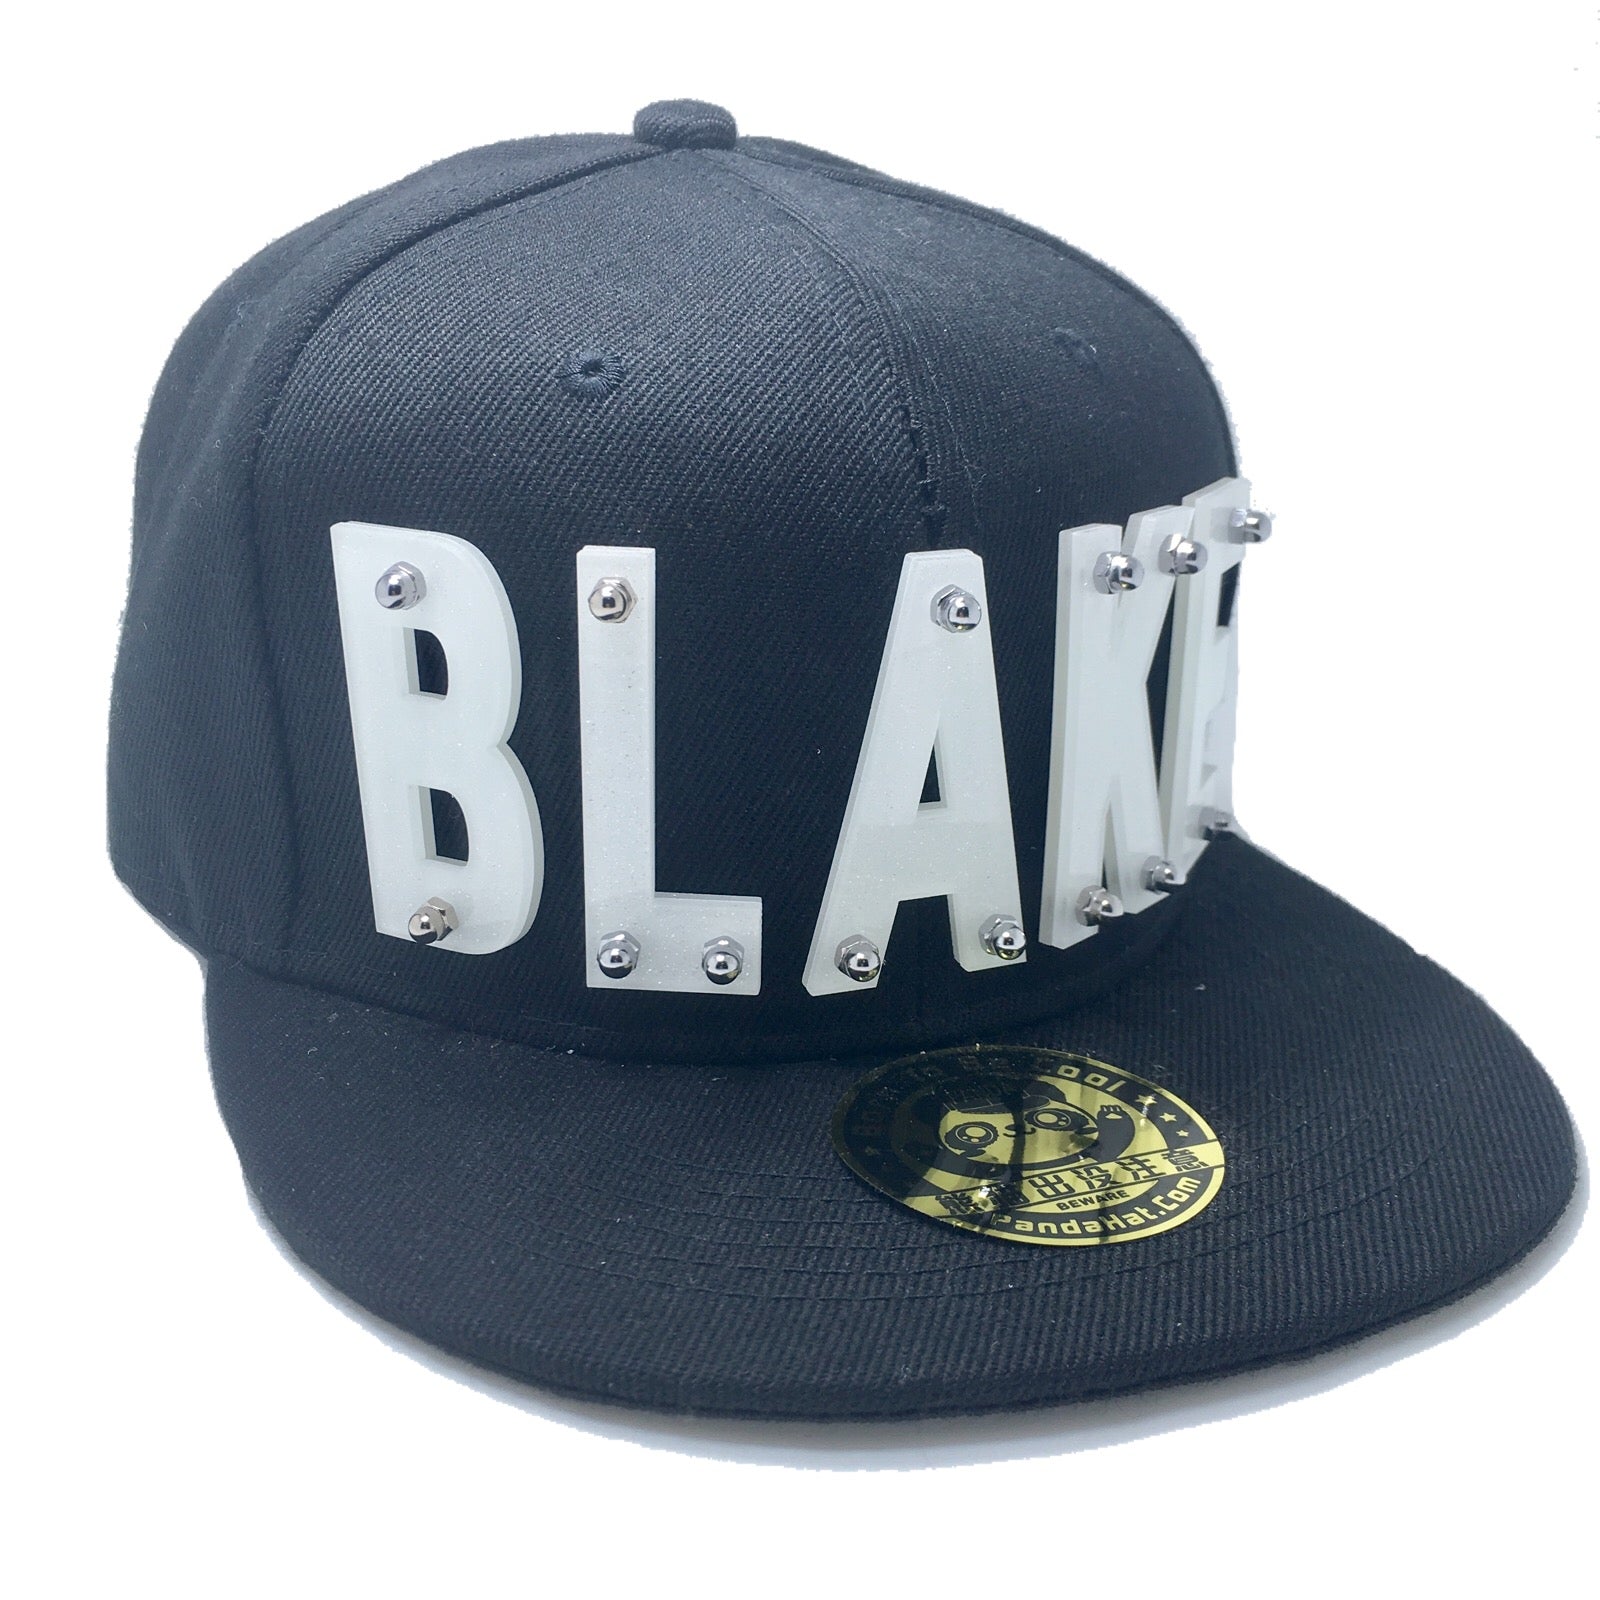 BLAKE HAT IN BLACK - Pandahat